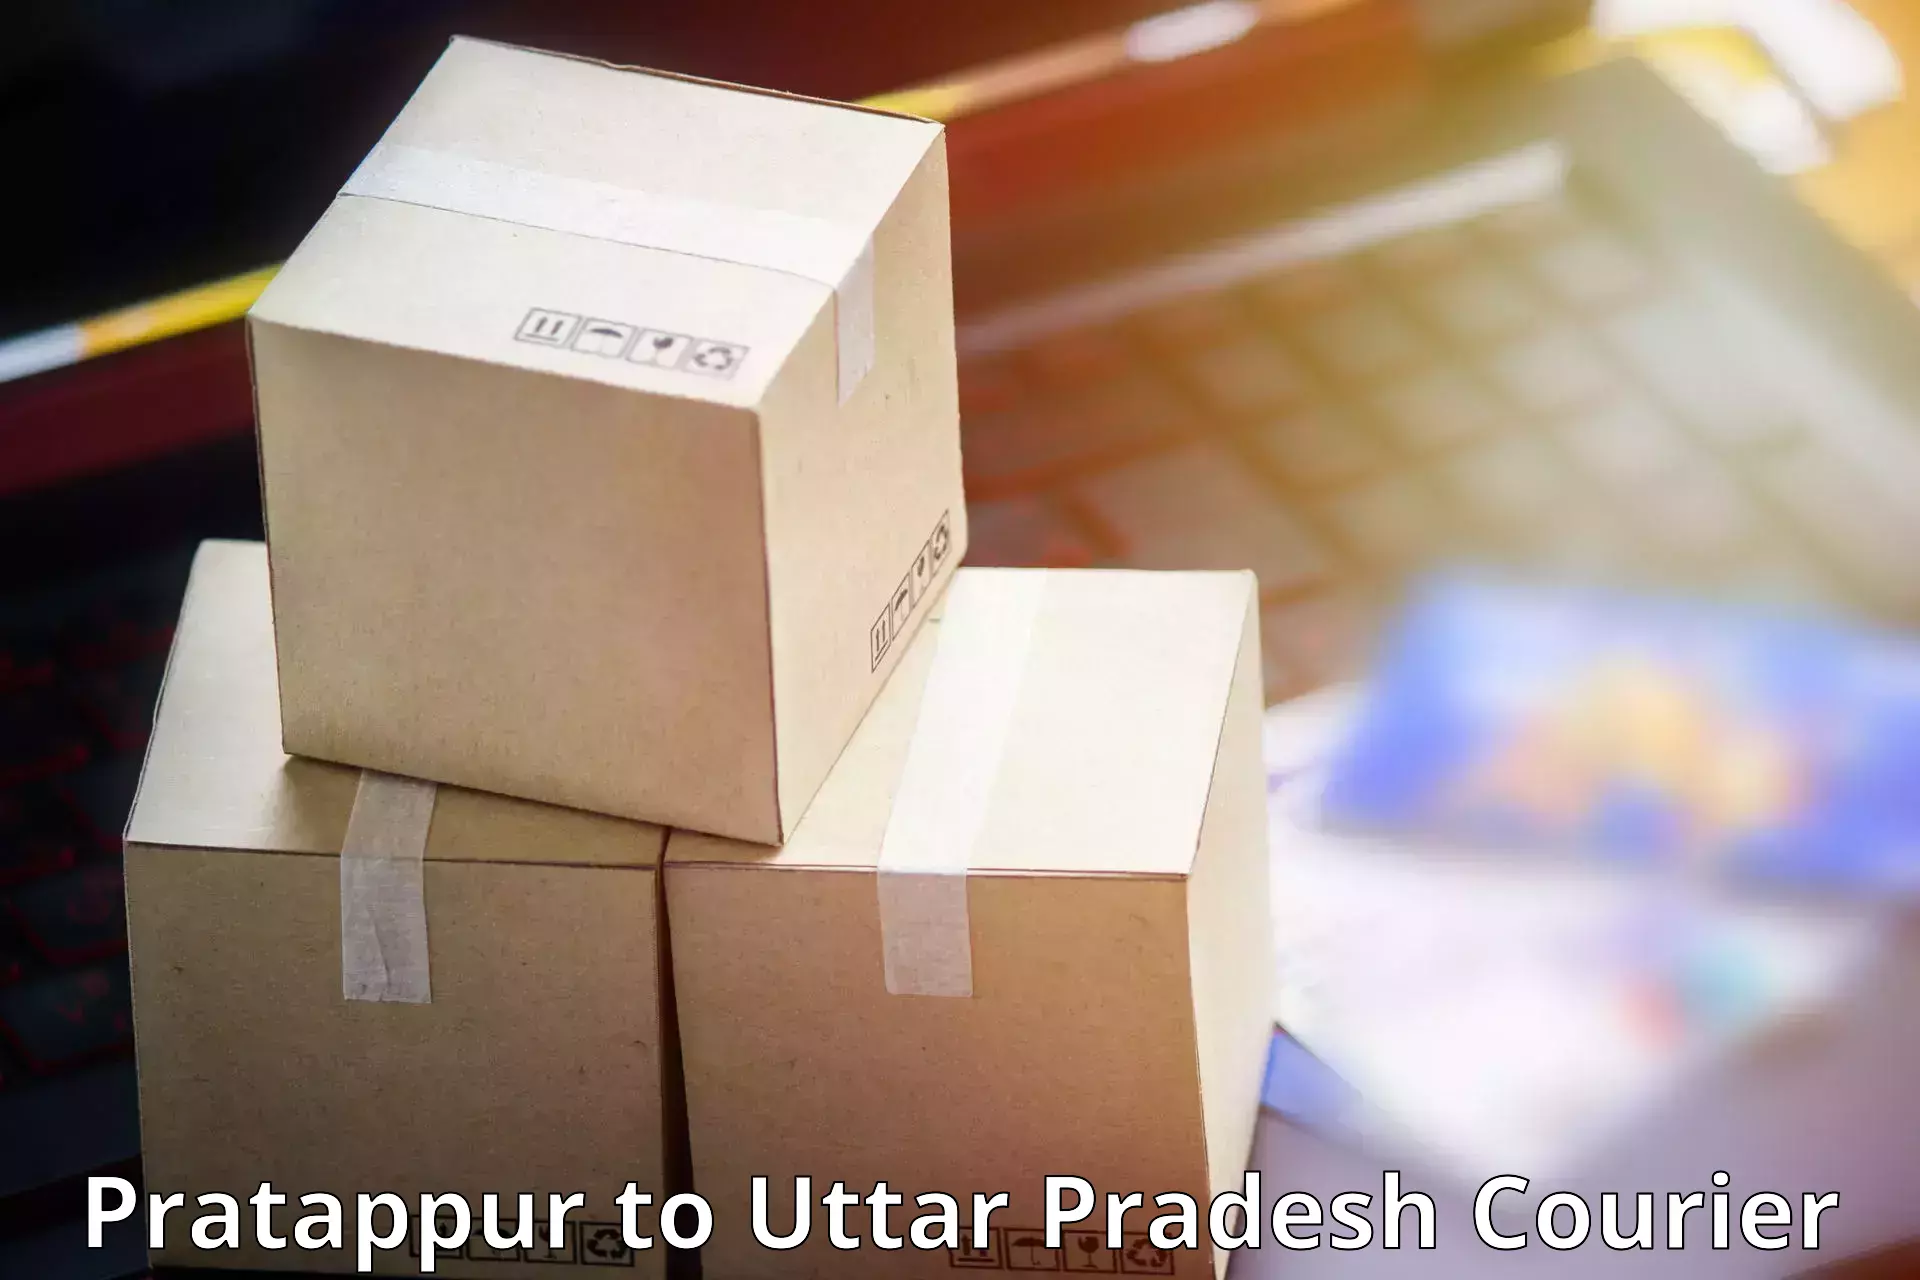 Courier service comparison Pratappur to Chiraiyakot